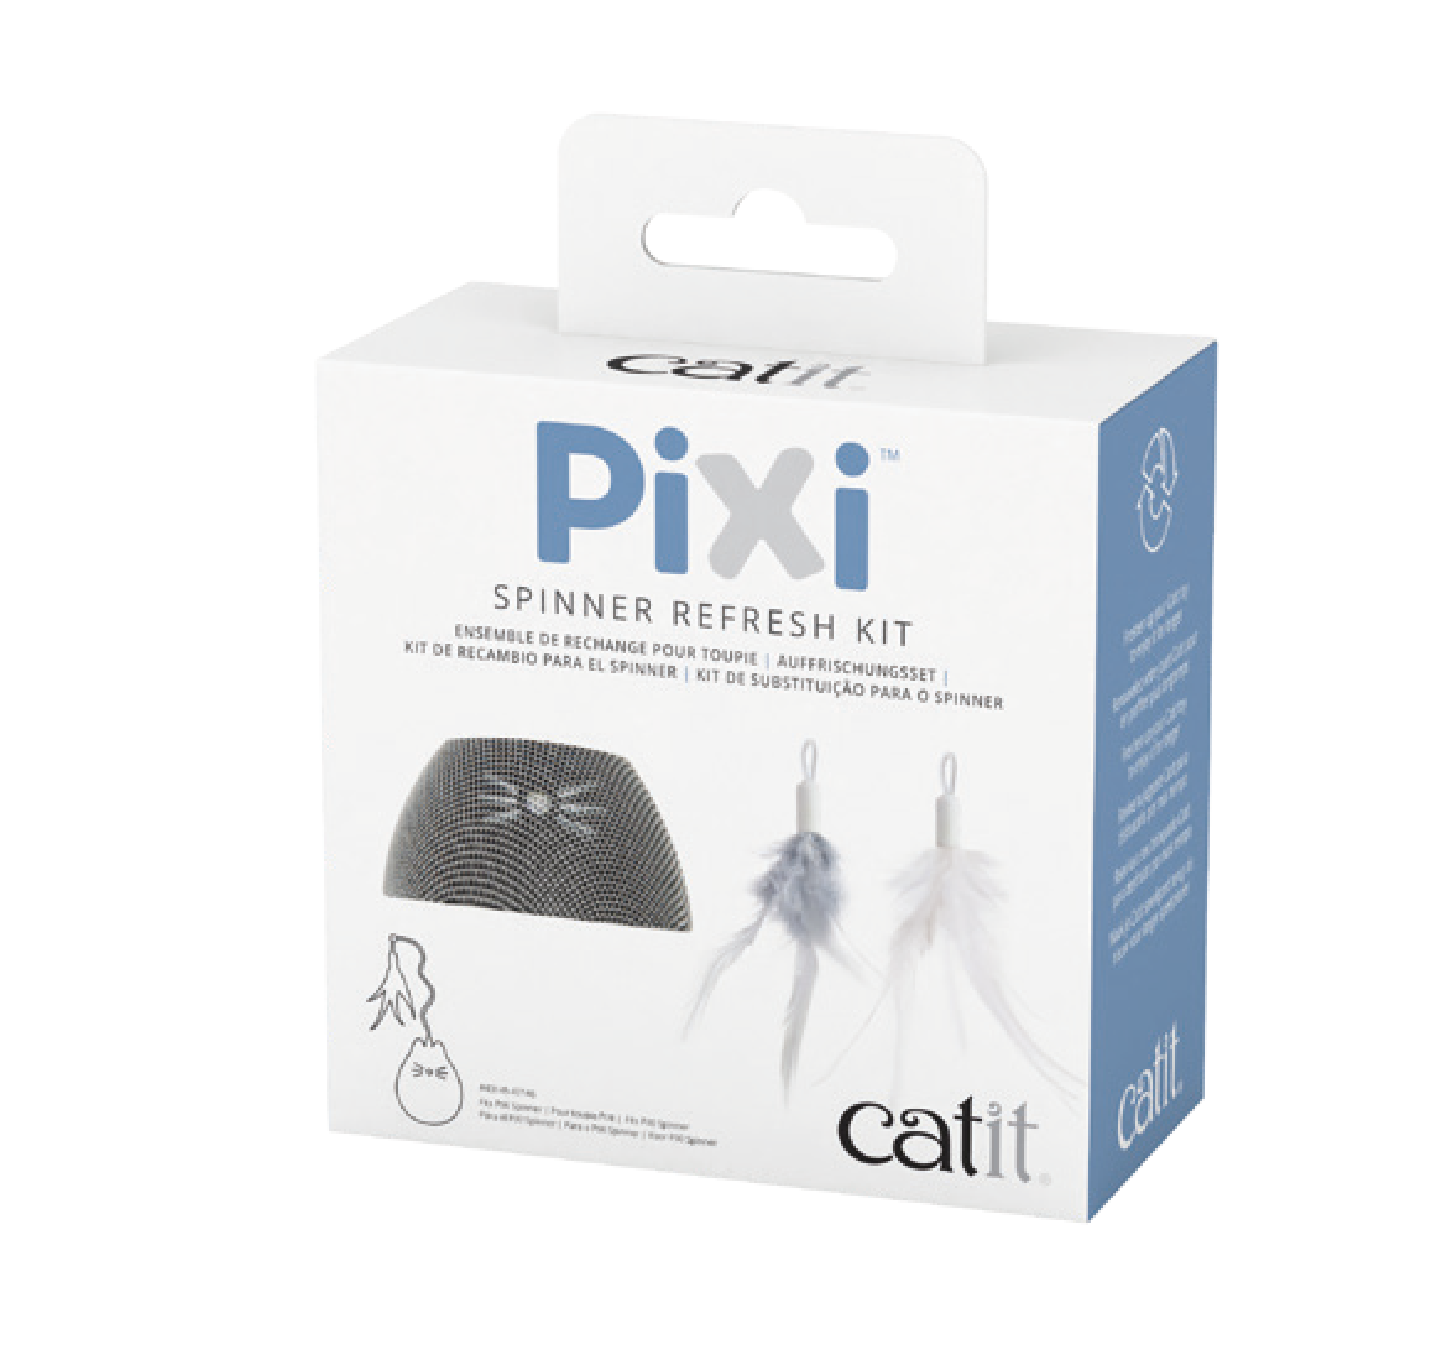 Kit de repuesto para el Catit PIXI Spinner